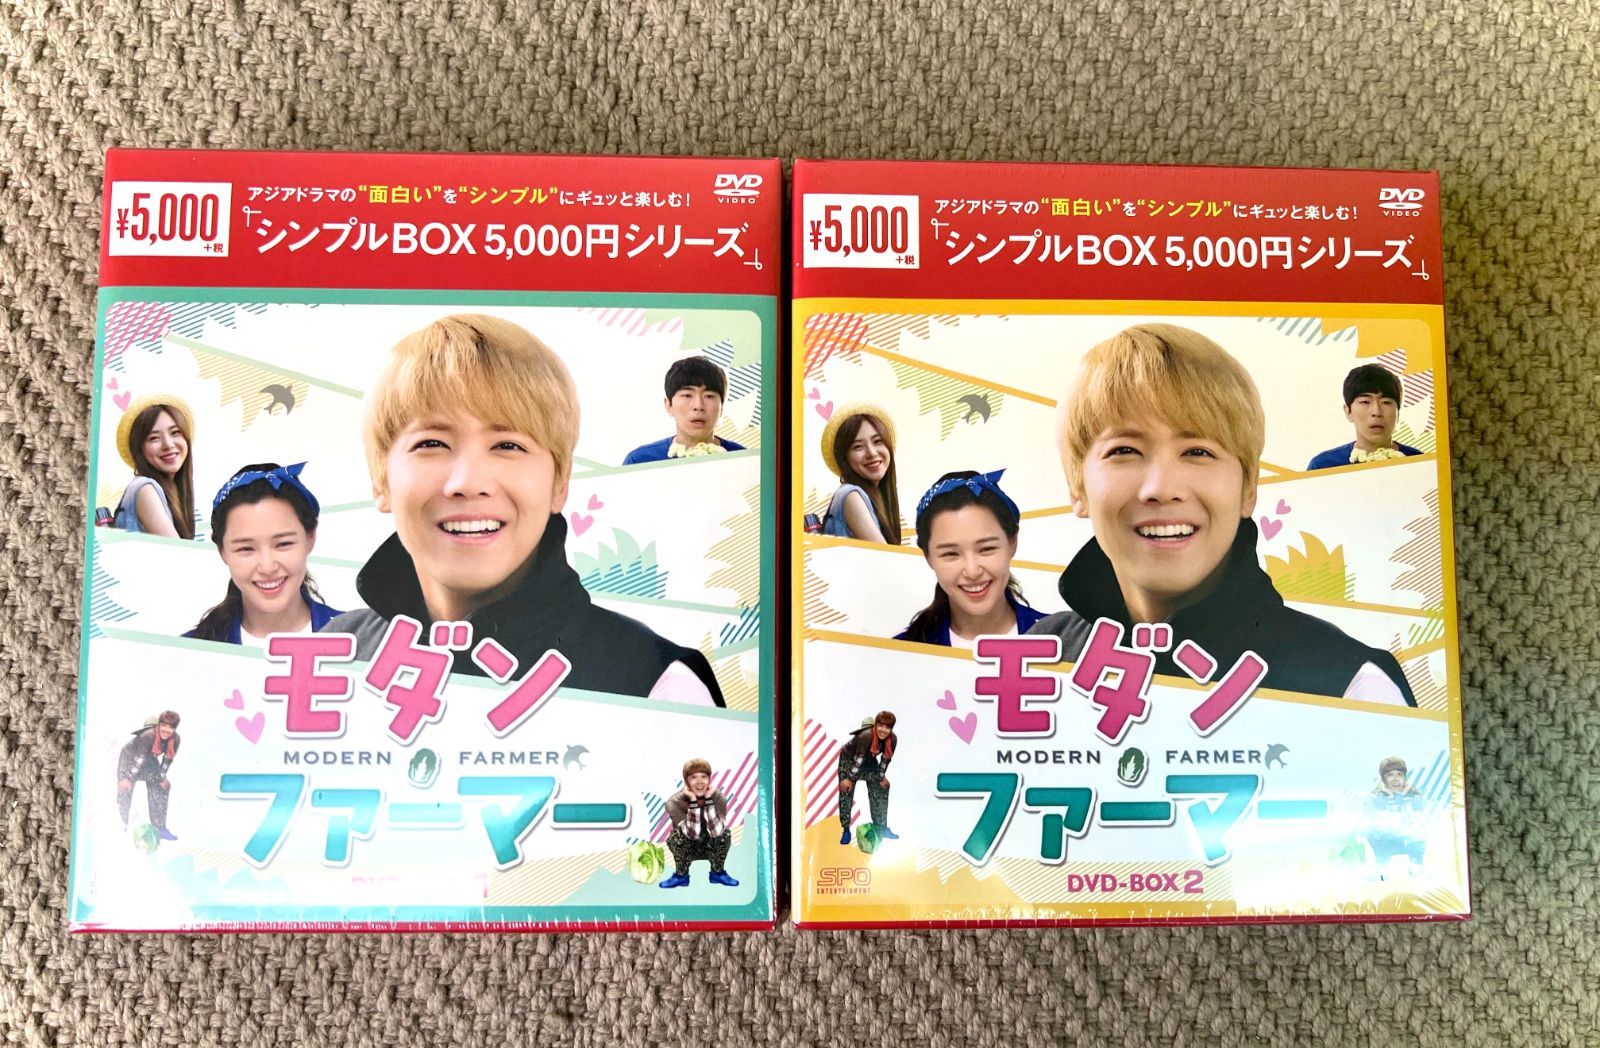 モダン・ファーマー】DVD-BOX 1+2 正規品 全巻セット 新品未開封 - CD